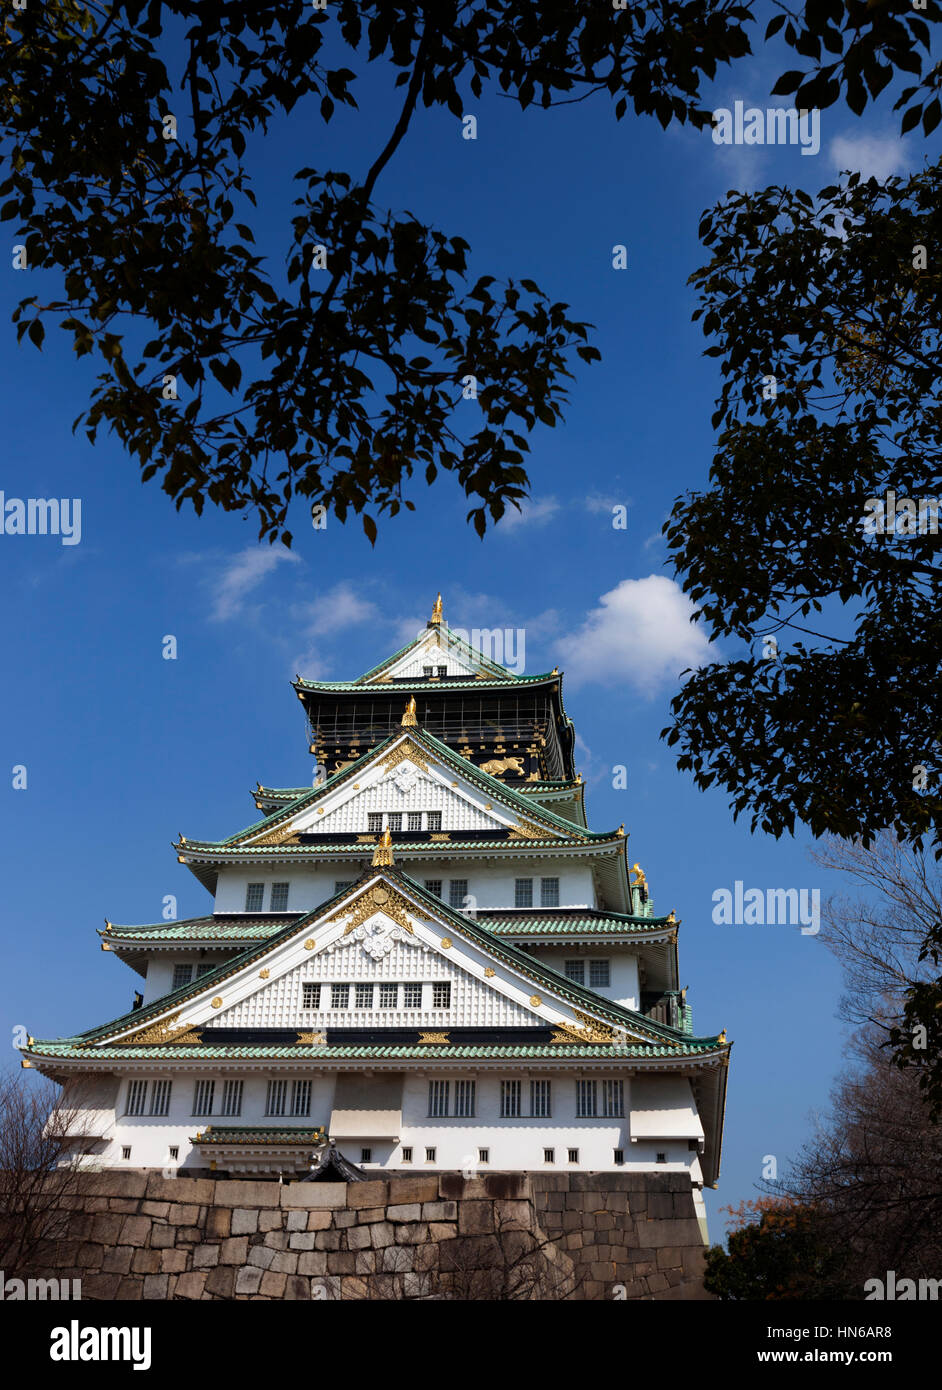 OSAKA, JAPAN - März 14: Die wichtigsten Turm von Osaka Castle umrahmt von Bäumen im Schlosspark in Osaka, Japan am 14. März 2012. Das Gebäude ist ein c Stockfoto